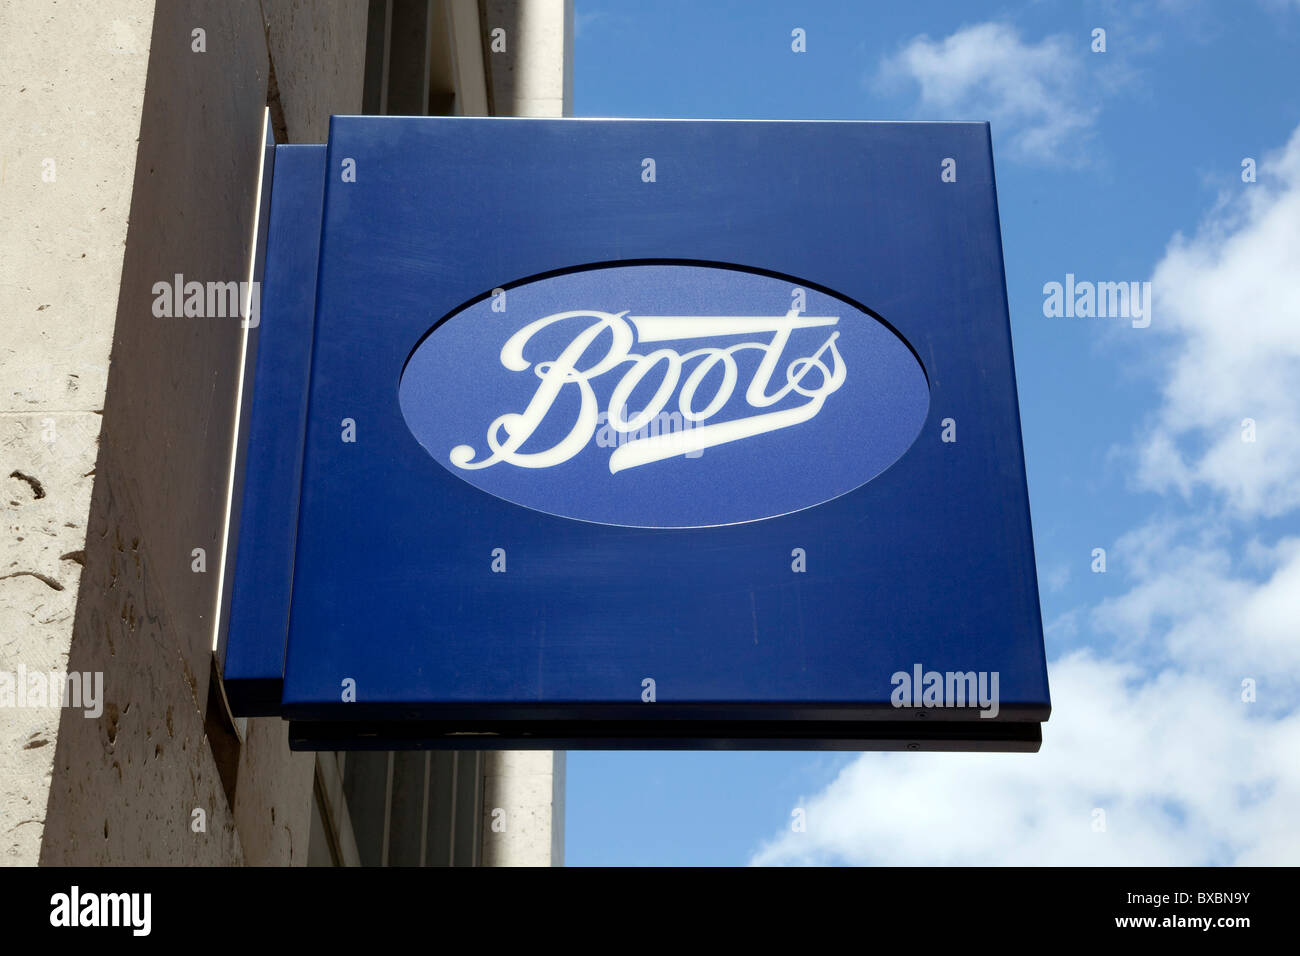 Logo de la chaîne de pharmacies Boots à Londres, Angleterre, Royaume-Uni, Europe Banque D'Images